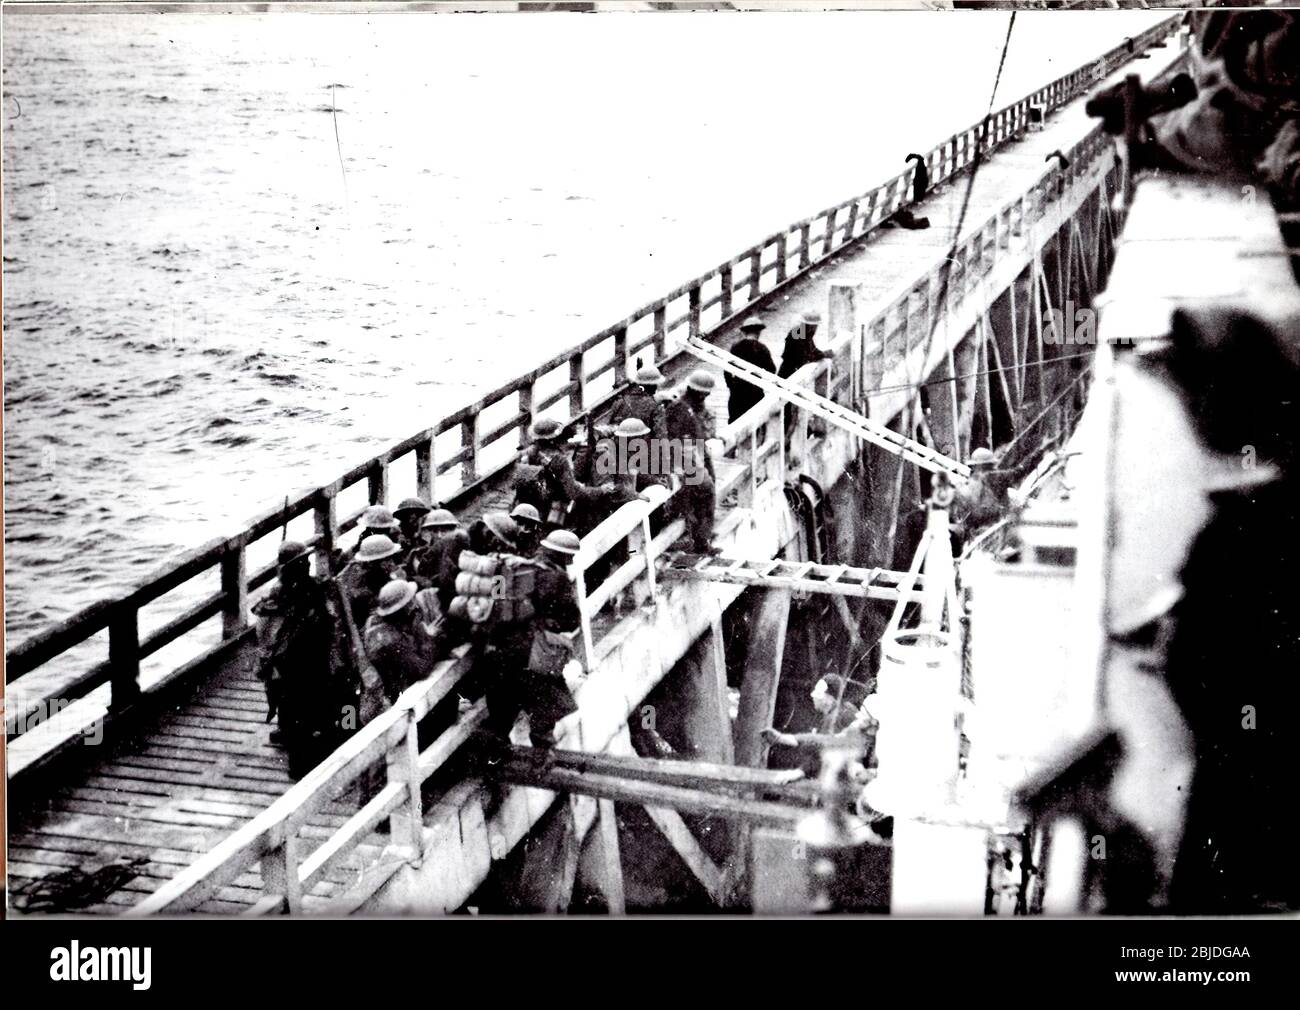 Die Evakuierung von Dünkirchen, die unter dem Codenamen Operation Dynamo und auch als das Wunder von Dünkirchen bekannt ist, war die Evakuierung alliierter Soldaten während des Zweiten Weltkriegs von den Stränden und dem Hafen von Dünkirchen im Norden Frankreichs zwischen dem 26. Mai und dem 4. Juni 1940. Stockfoto